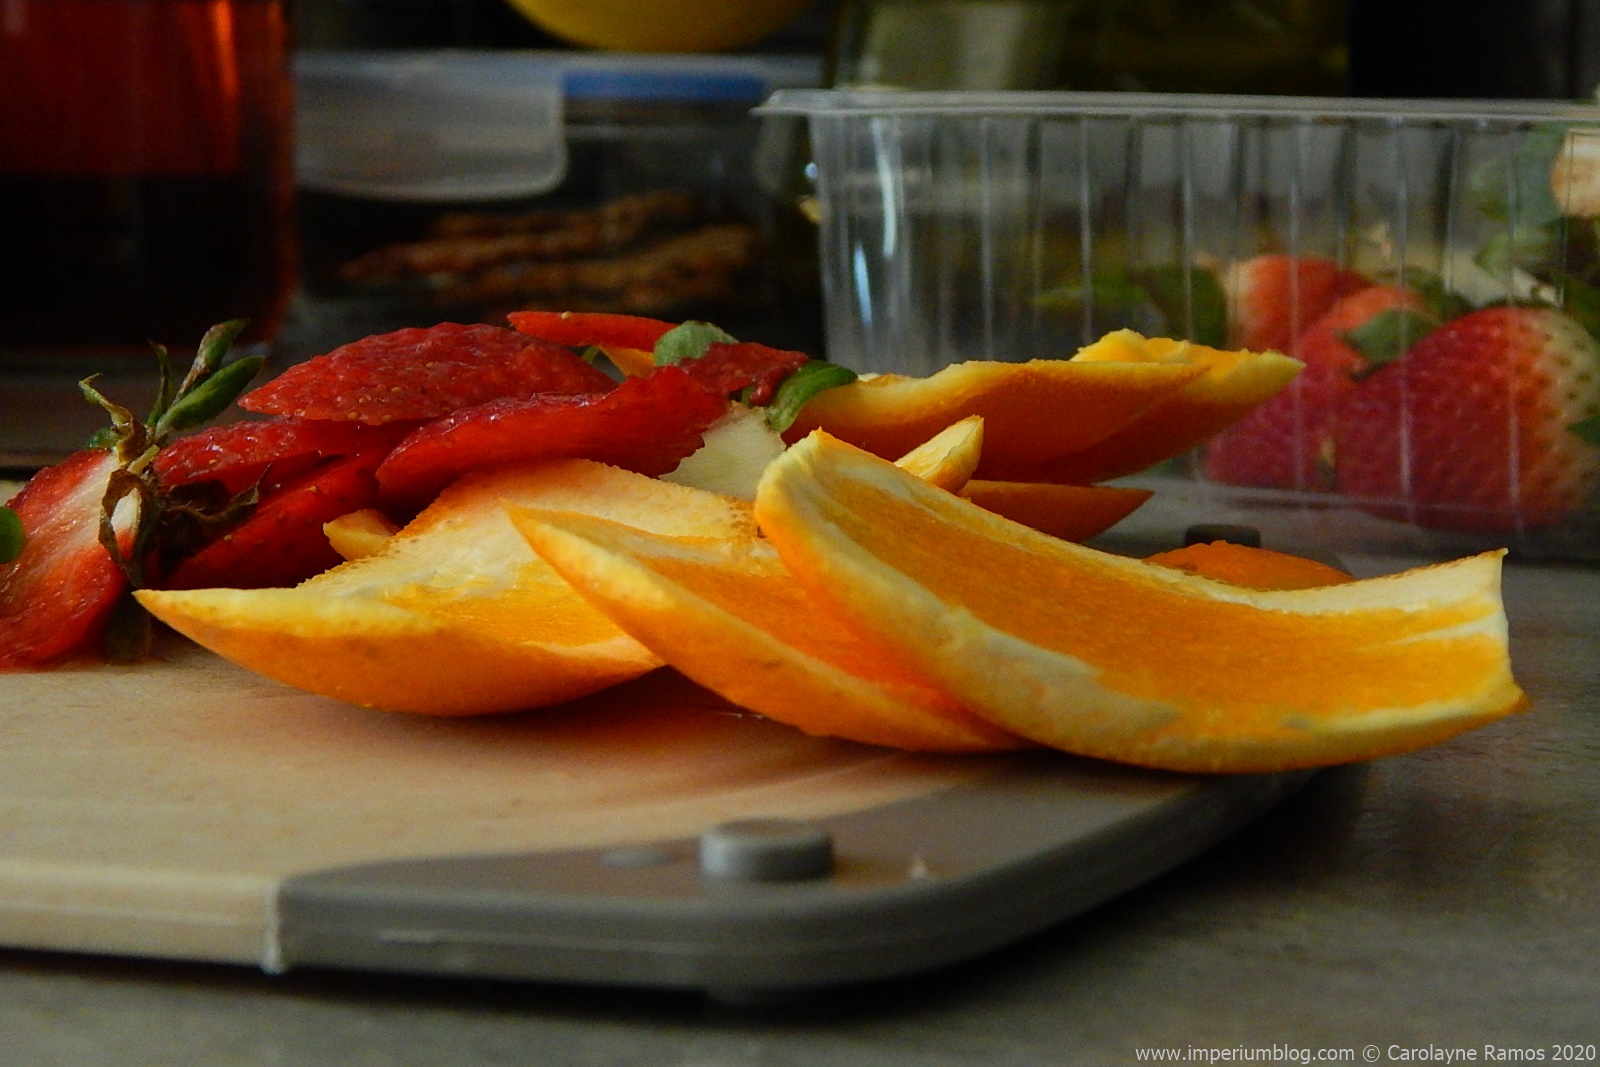 fotografia de cascas de laranja e morangos, sobre uma tábua de cortar de cozinha. ao fundo, uma caixa de plástico com alguns morangos inteiros. imagem alusiva a um artigo acerca da reutilização de cascas de alimentos.